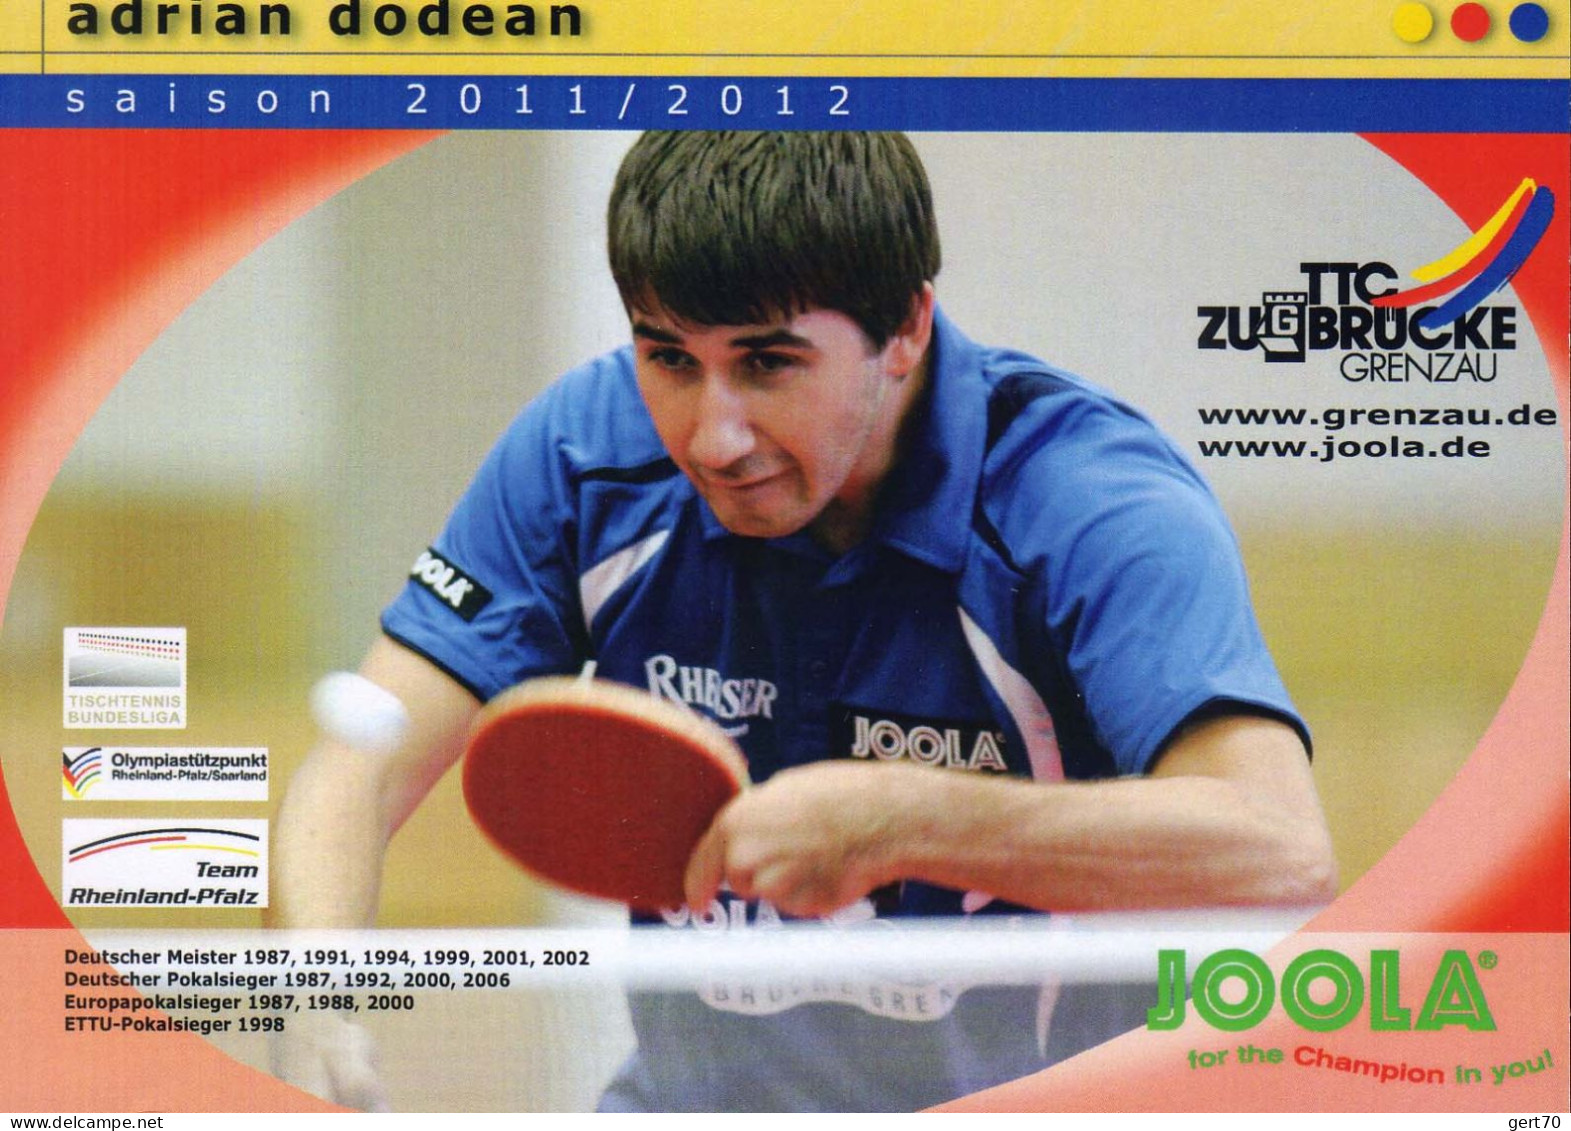 Romania / Roumanie 2012, Adrian Dodean - Tischtennis